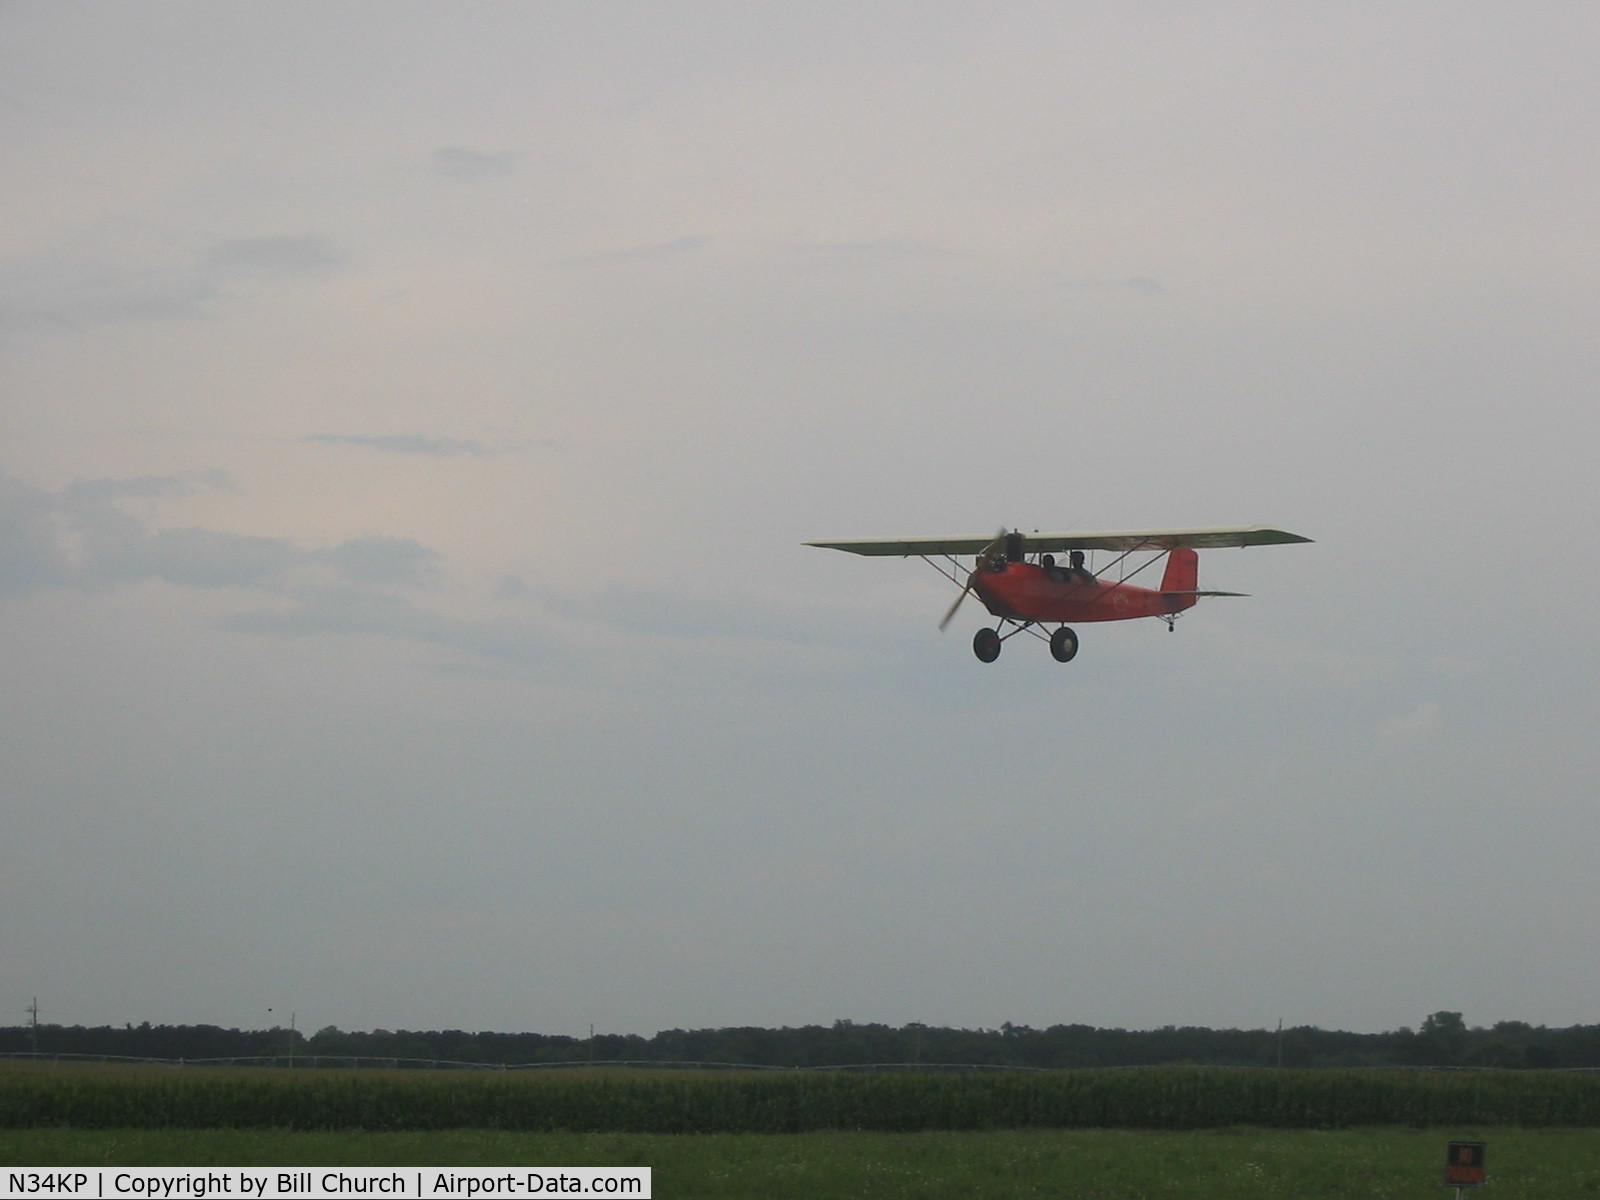 N34KP, 2000 Pietenpol Air Camper C/N 6, N34KP approaching landing at Brodhead